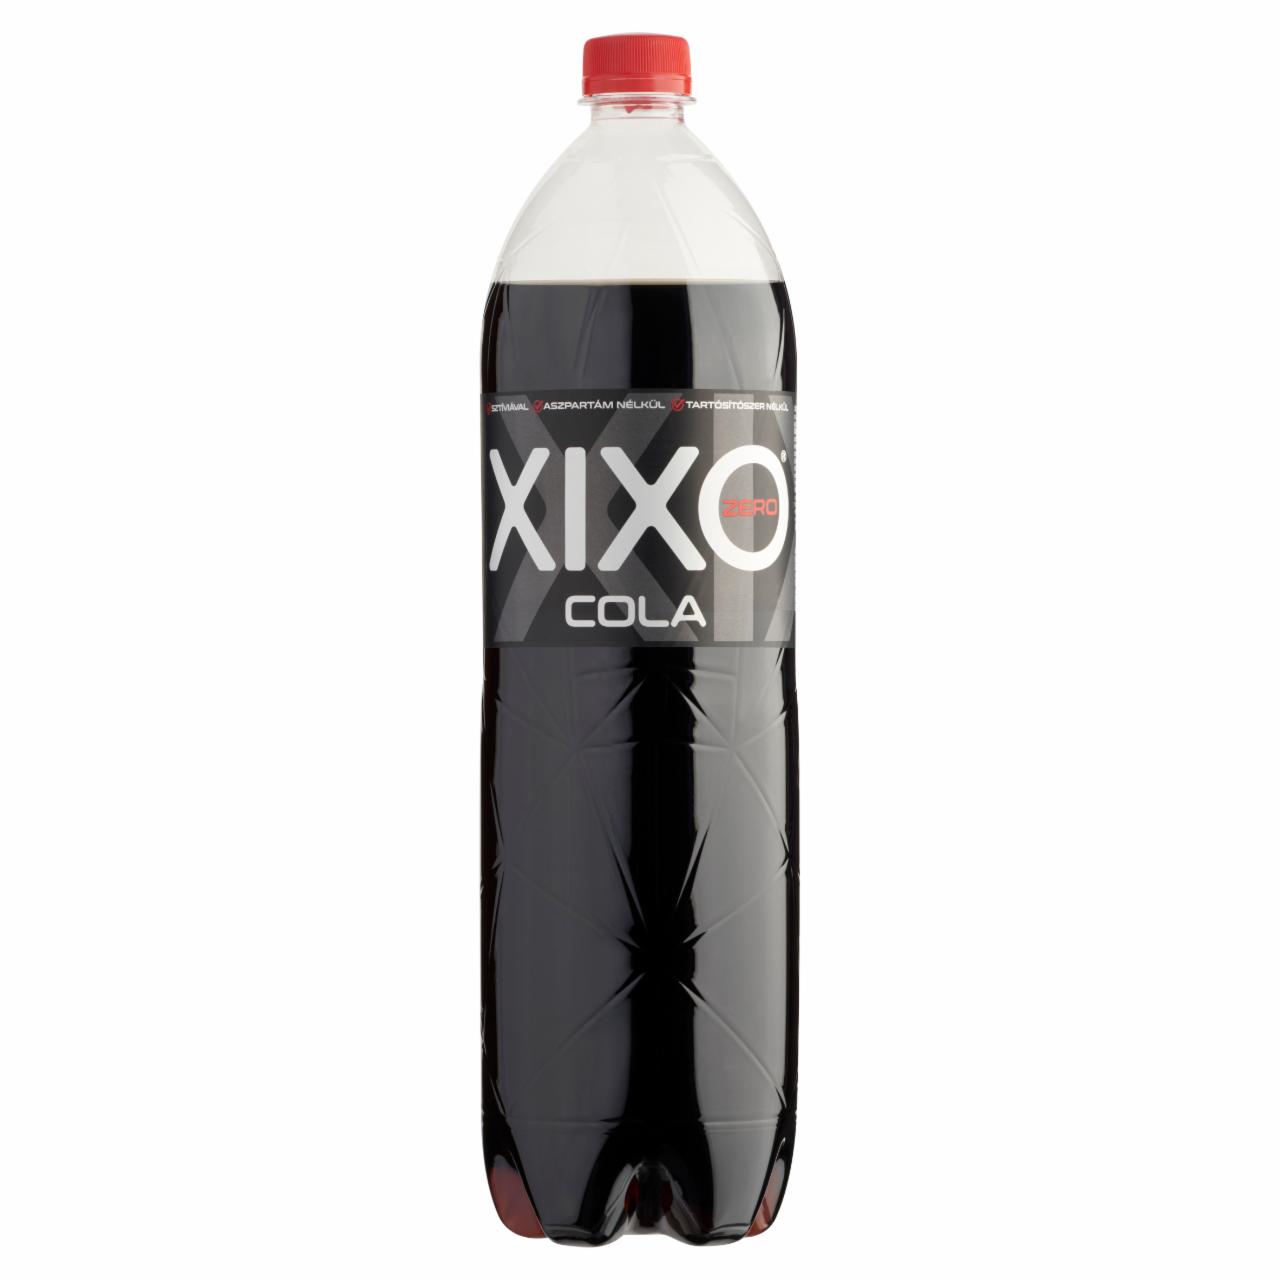 Képek - XIXO Cola Zero kólaízű, energia- és cukormentes, szénsavas üdítőital édesítőszerekkel 1,5 l